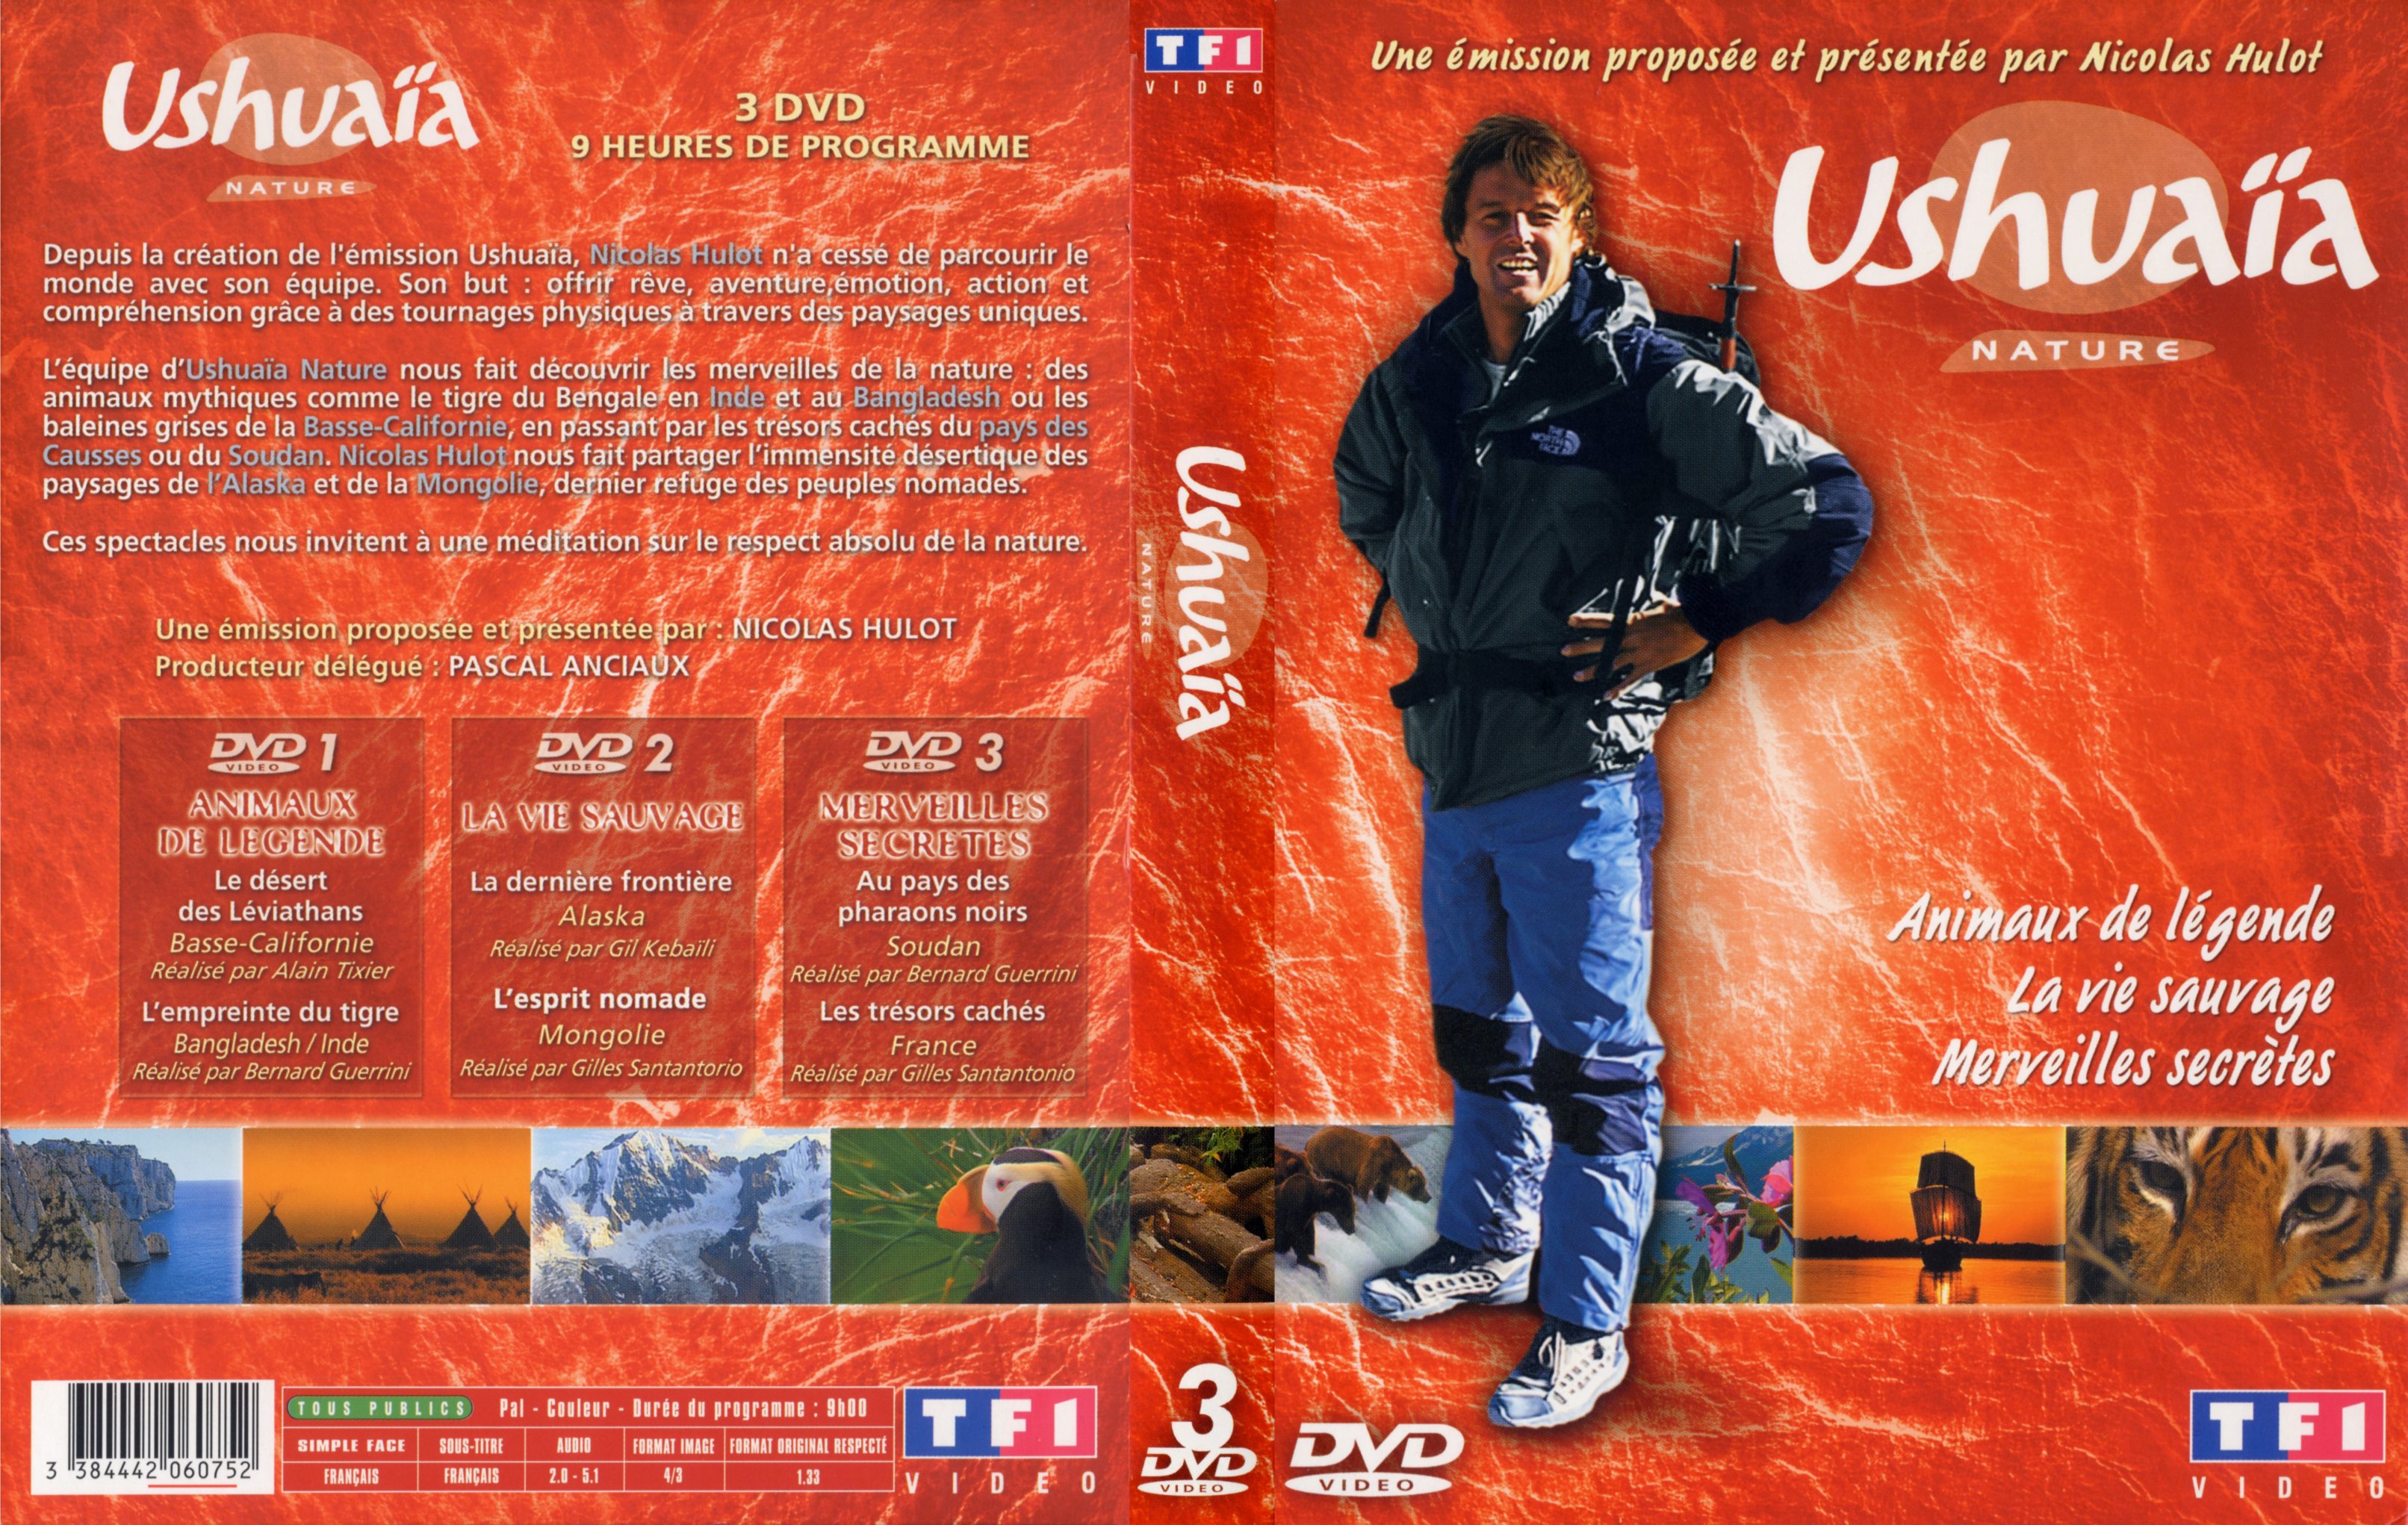 Jaquette DVD Ushuaia - Animaux de legende La vie sauvage Merveilles secretes